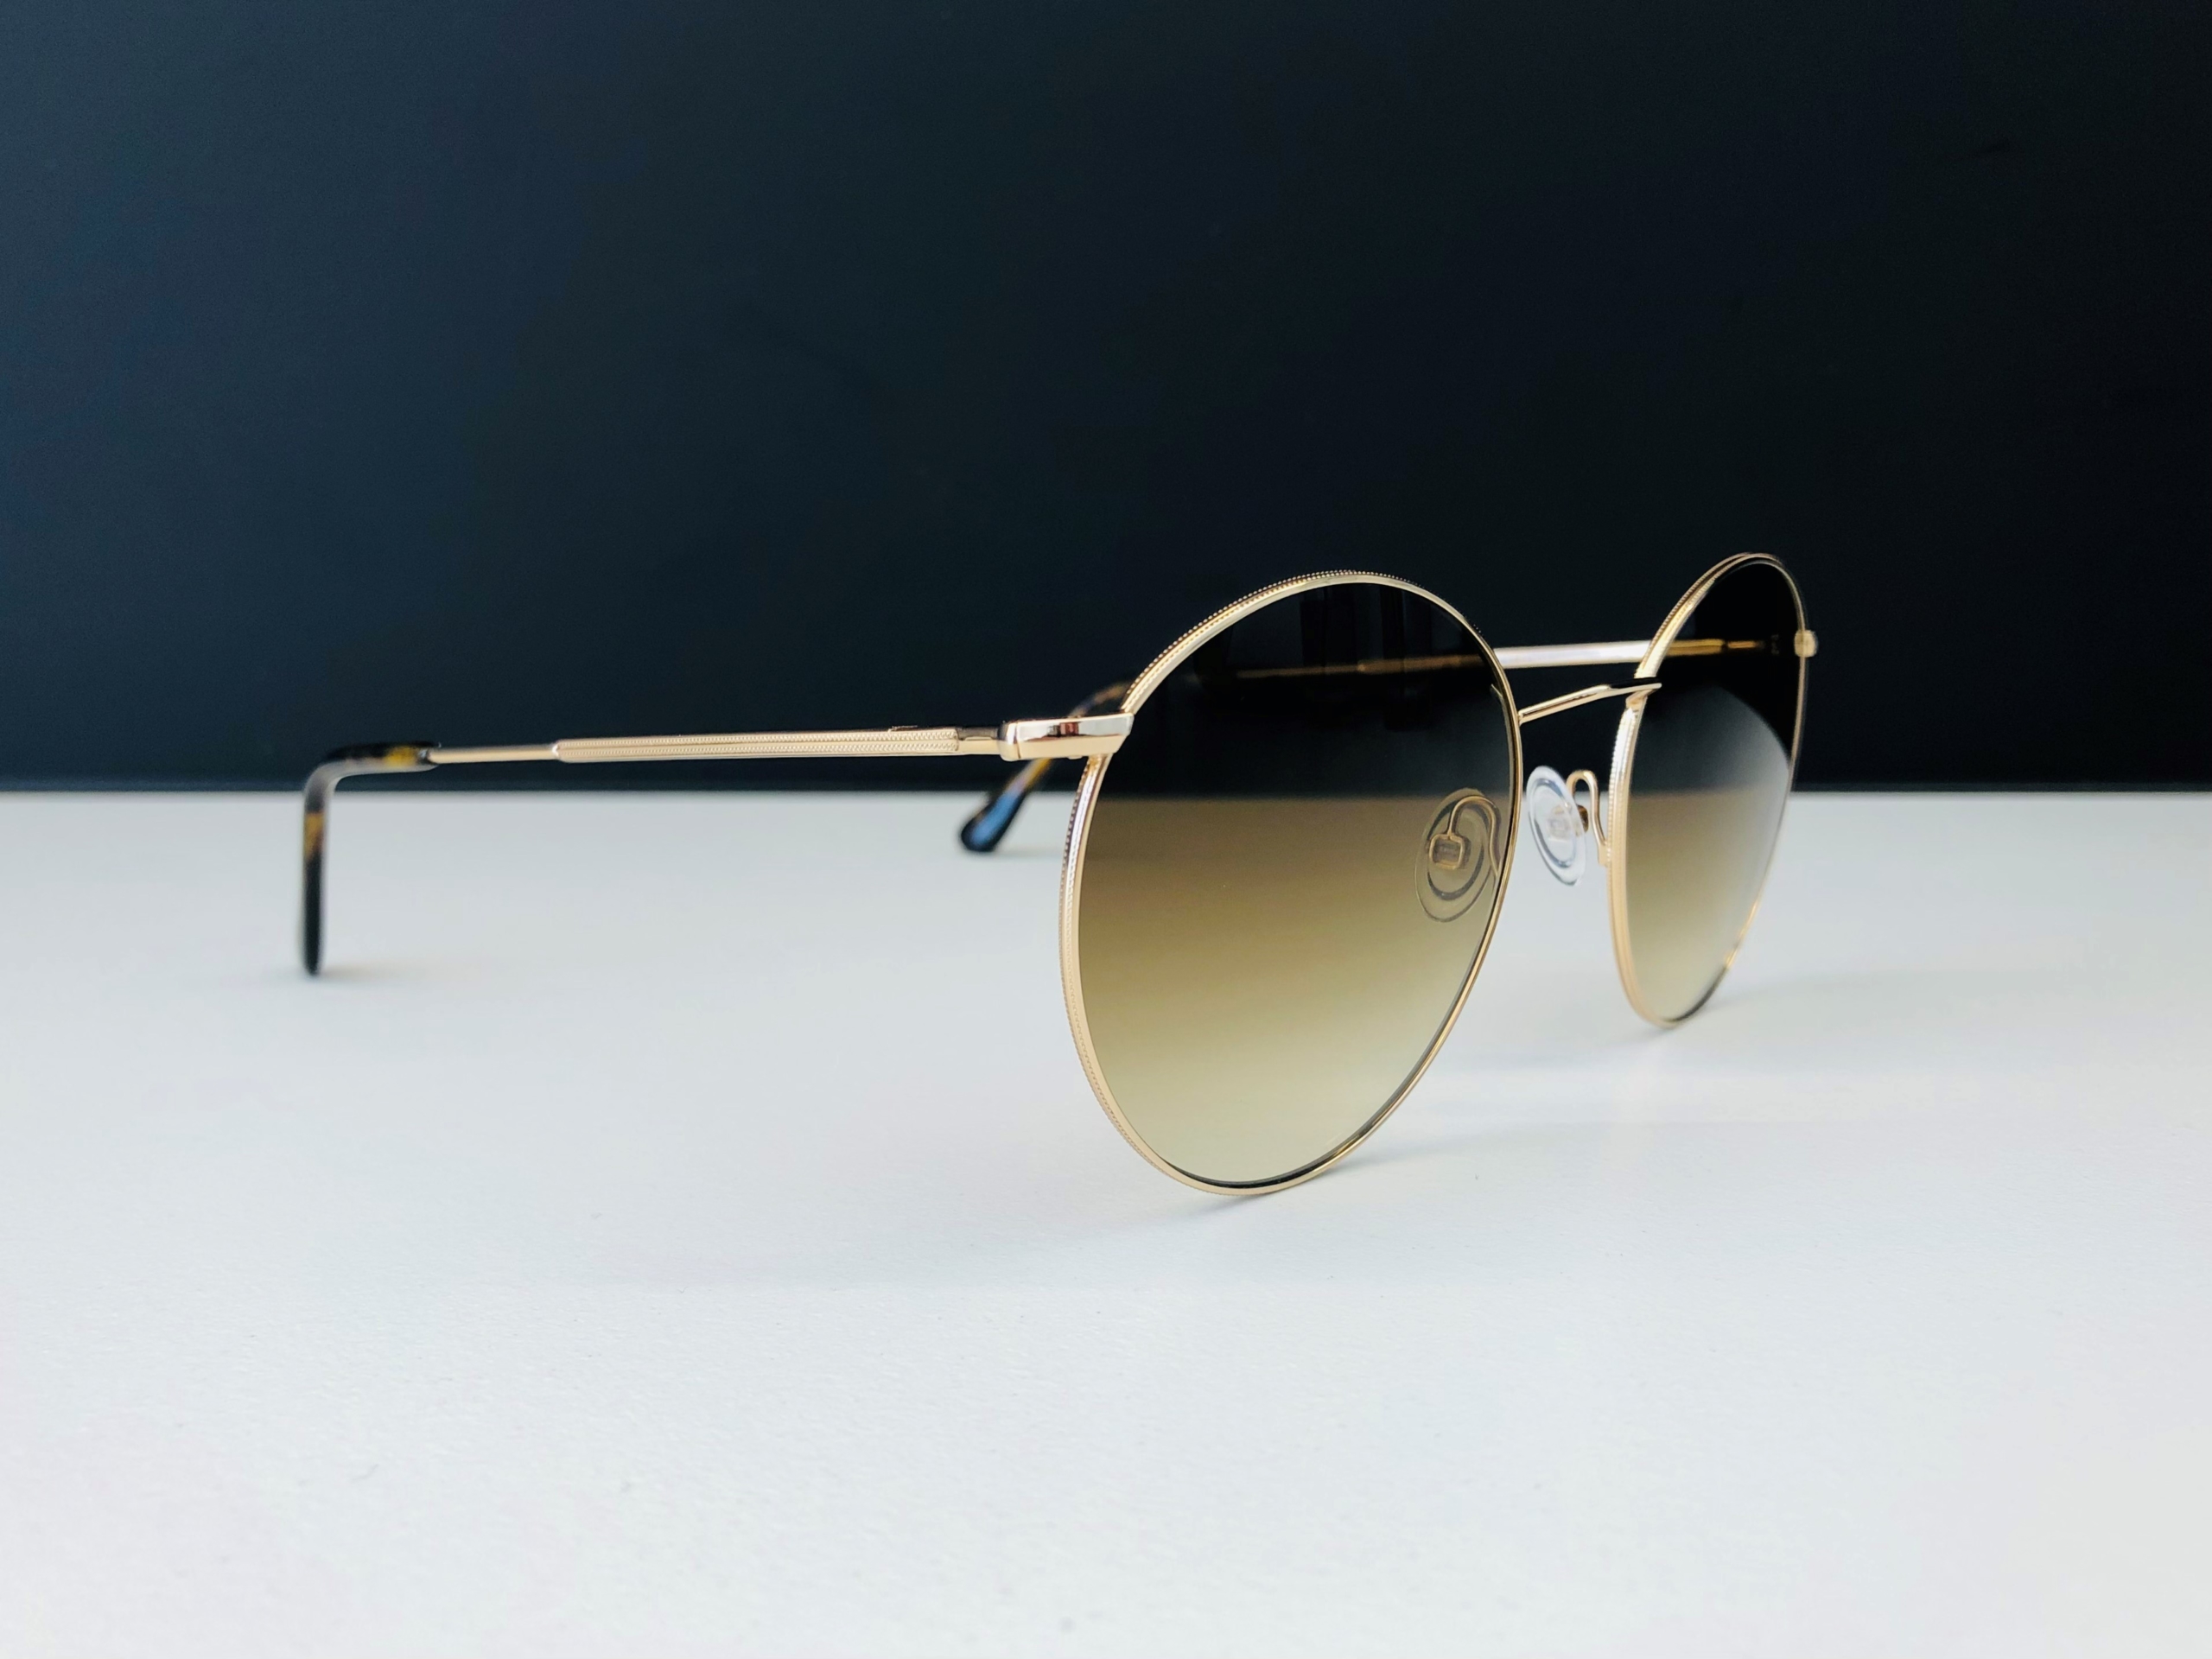 Sonnenbrillen Trends 2022-Metall fein-Augensache-Optiker-Friedberg-Augsburg-Brille-Sonnenbrille-Kontaktlinse